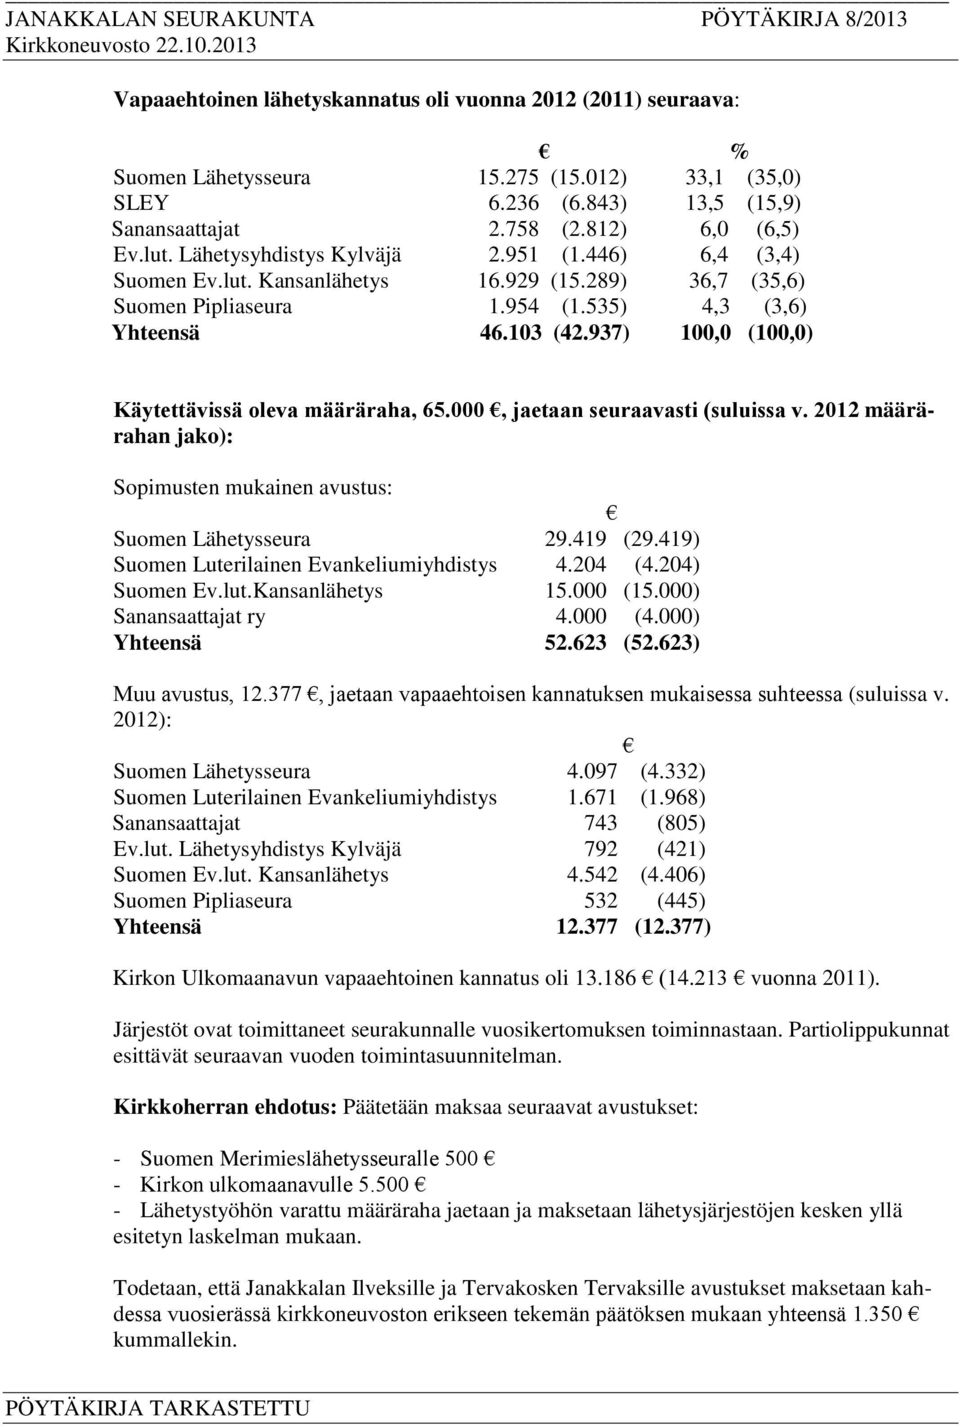 937) 100,0 (100,0) Käytettävissä oleva määräraha, 65.000, jaetaan seuraavasti (suluissa v. 2012 määrärahan jako): Sopimusten mukainen avustus: Suomen Lähetysseura 29.419 (29.